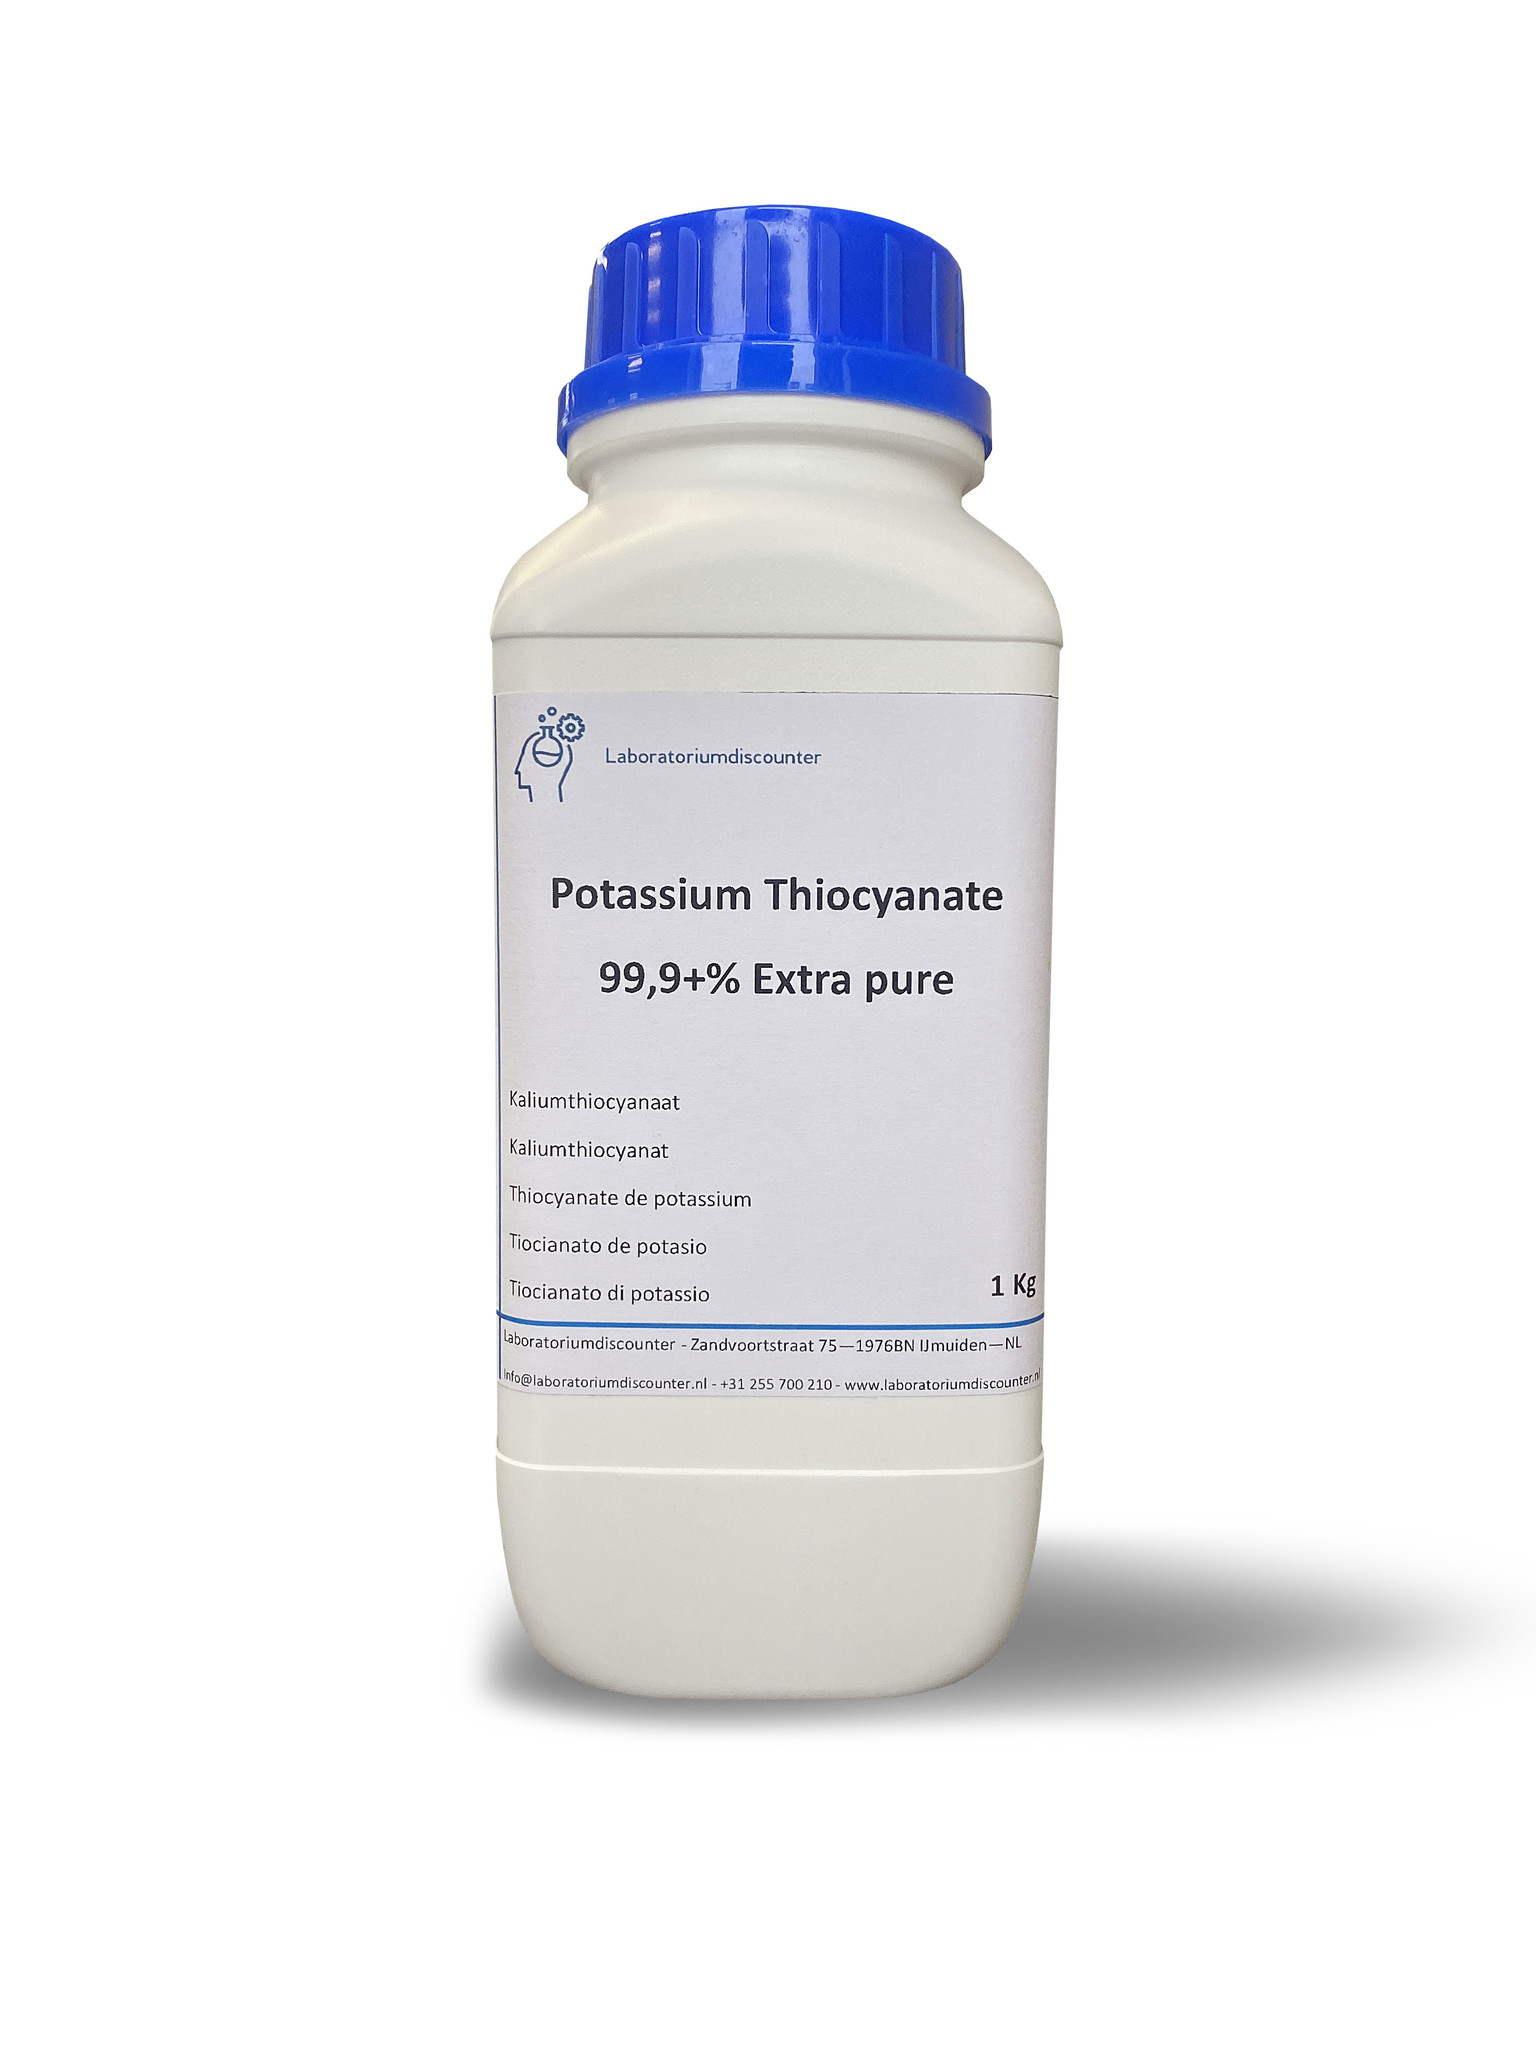 Voorganger Adviseur Verlaten buy Potassium thiocyanate CAS 333-20-0 ? - buy Potassium thiocyanate CAS  333-20-0 ? Highest quality potassium thiocyanate for a friendly price!  Delivered quickly